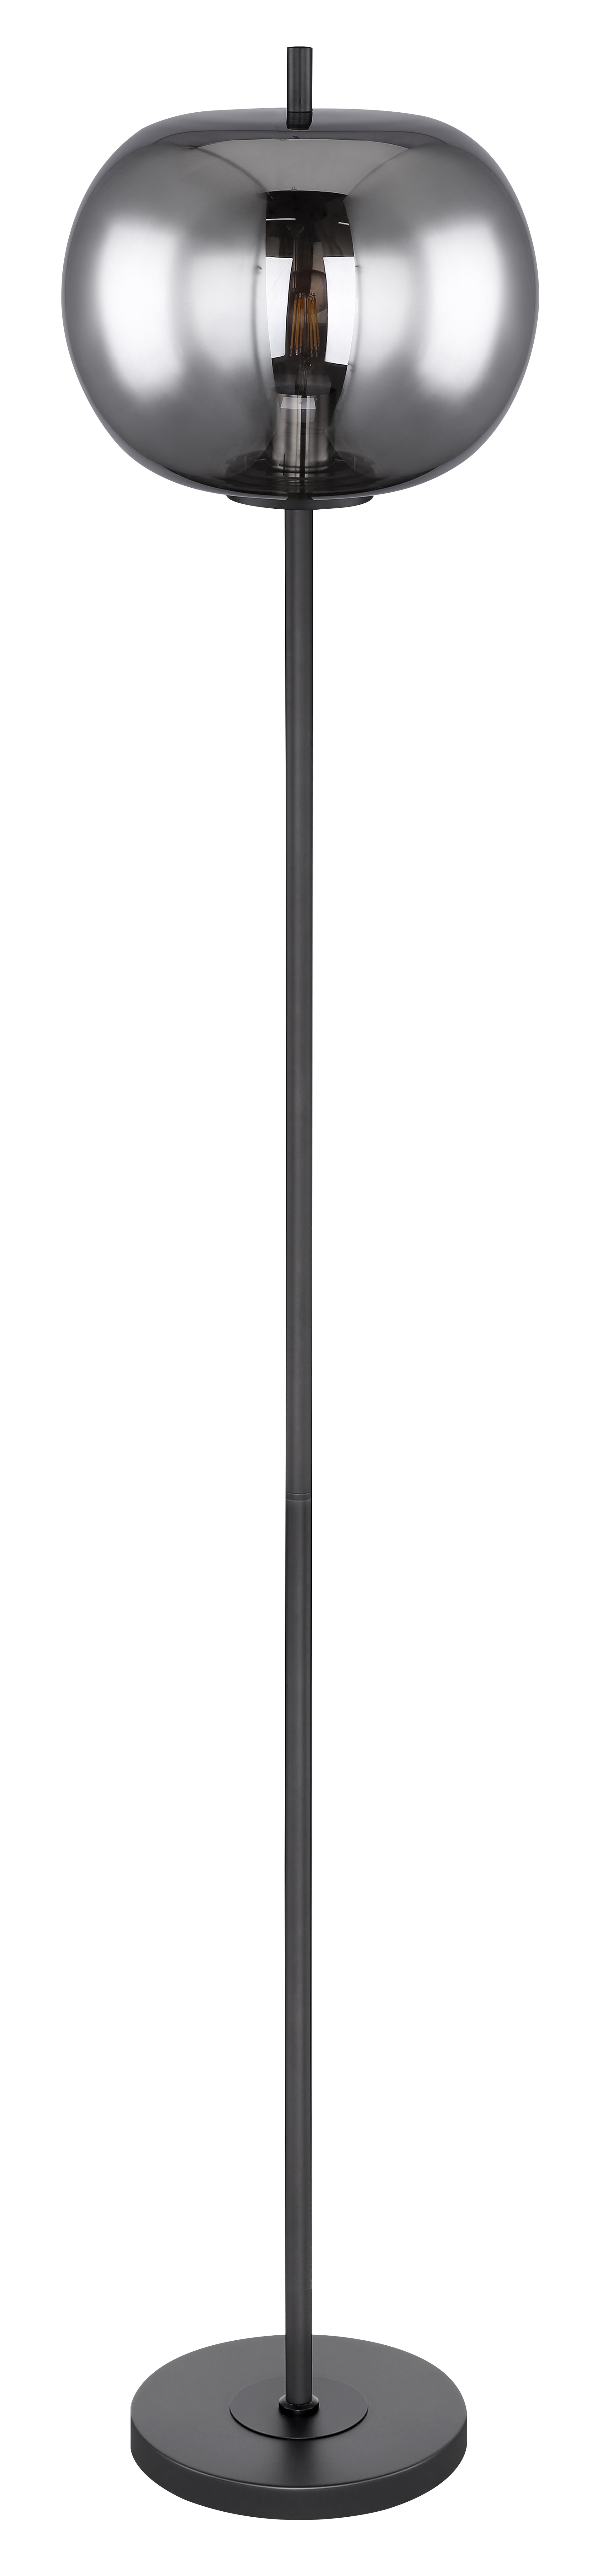 GLOBO Retrofit Stehlampe BLACKY 160 cm schwarz /rauchfarbig